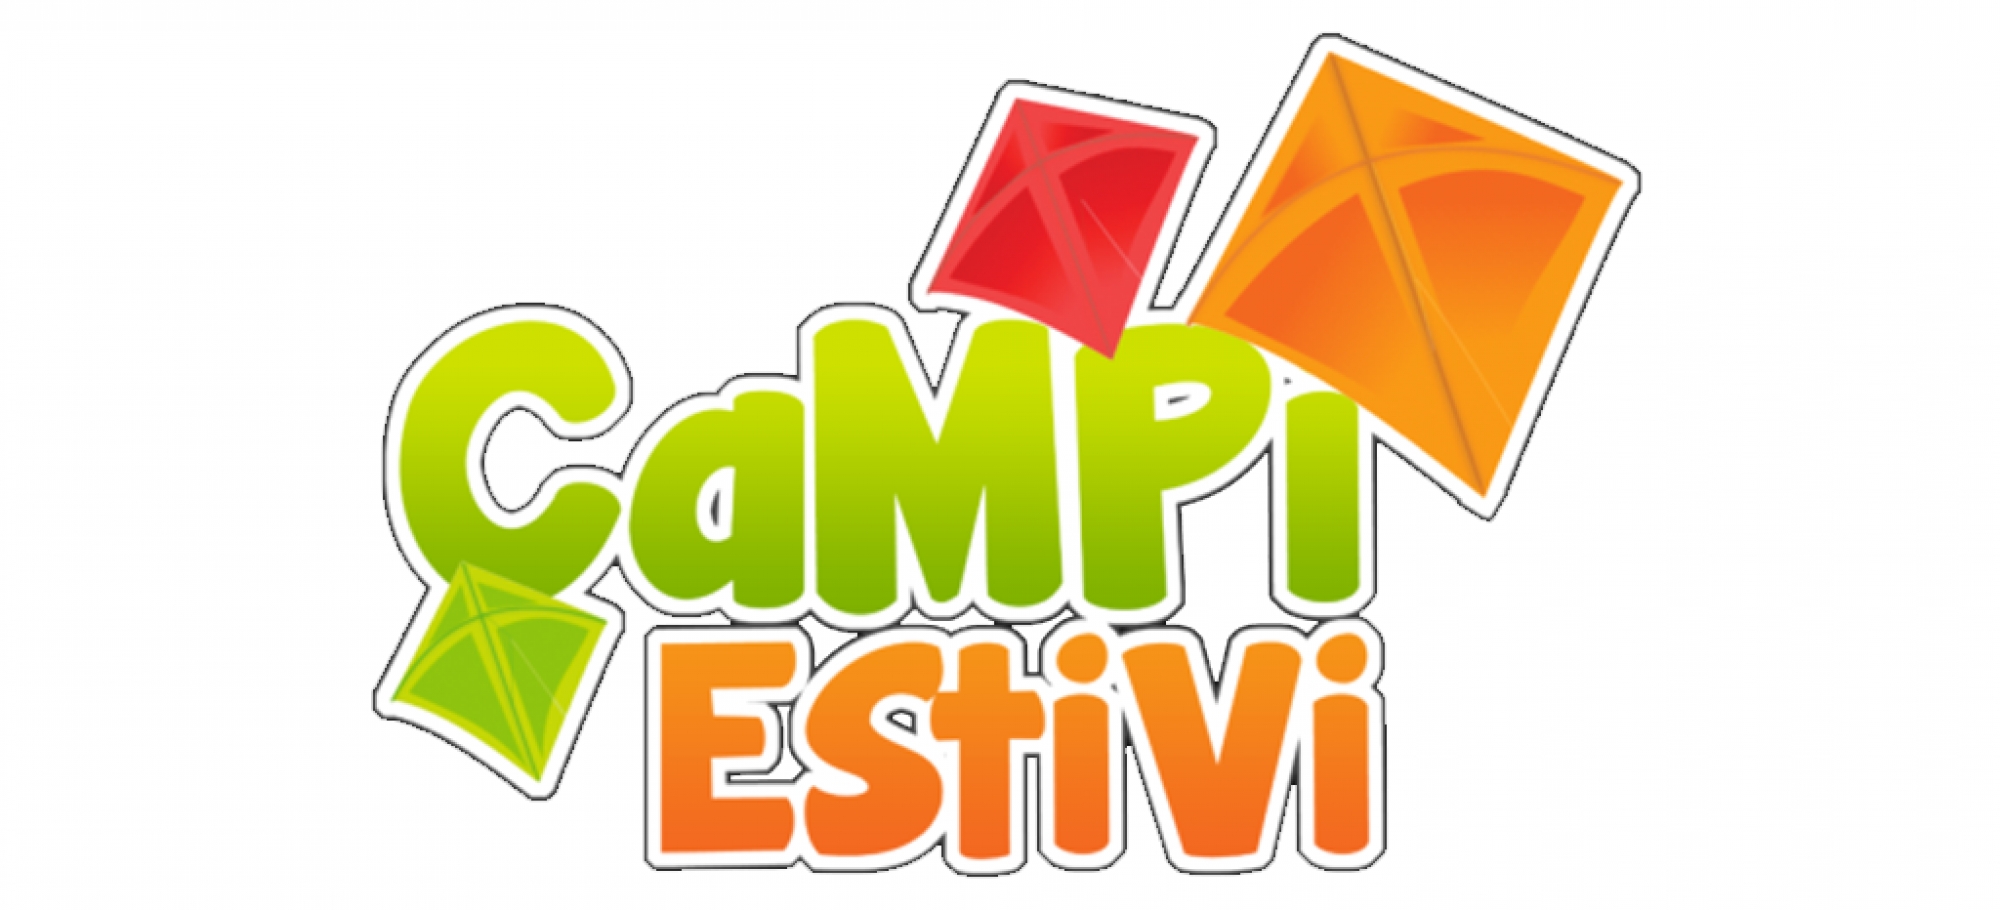 Campi Estivi - Back to school 2